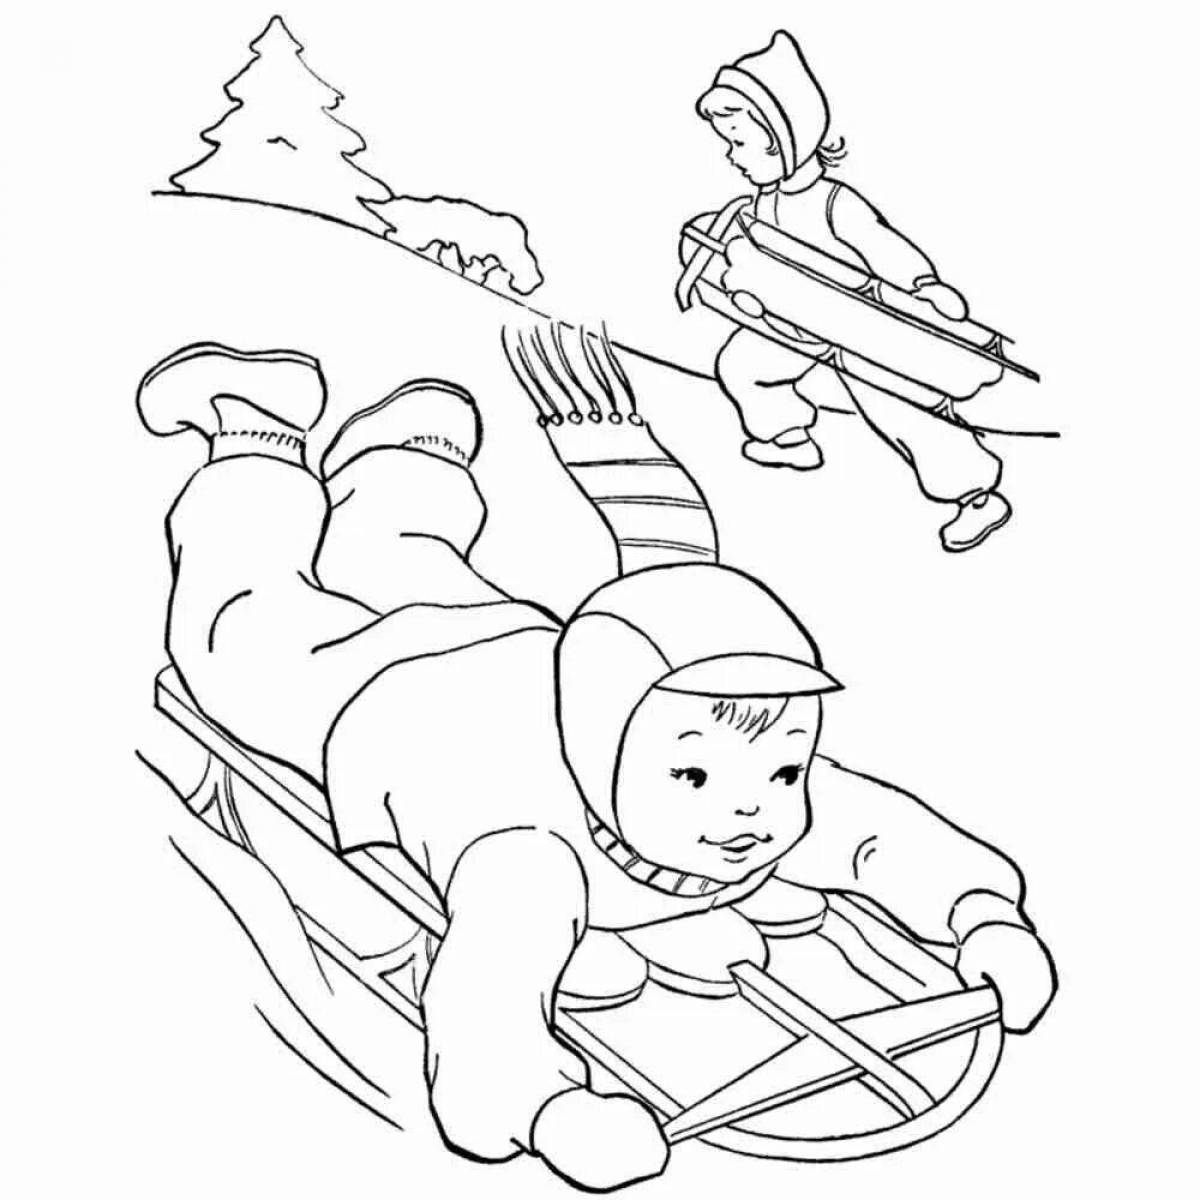 Fun coloring book for sledding